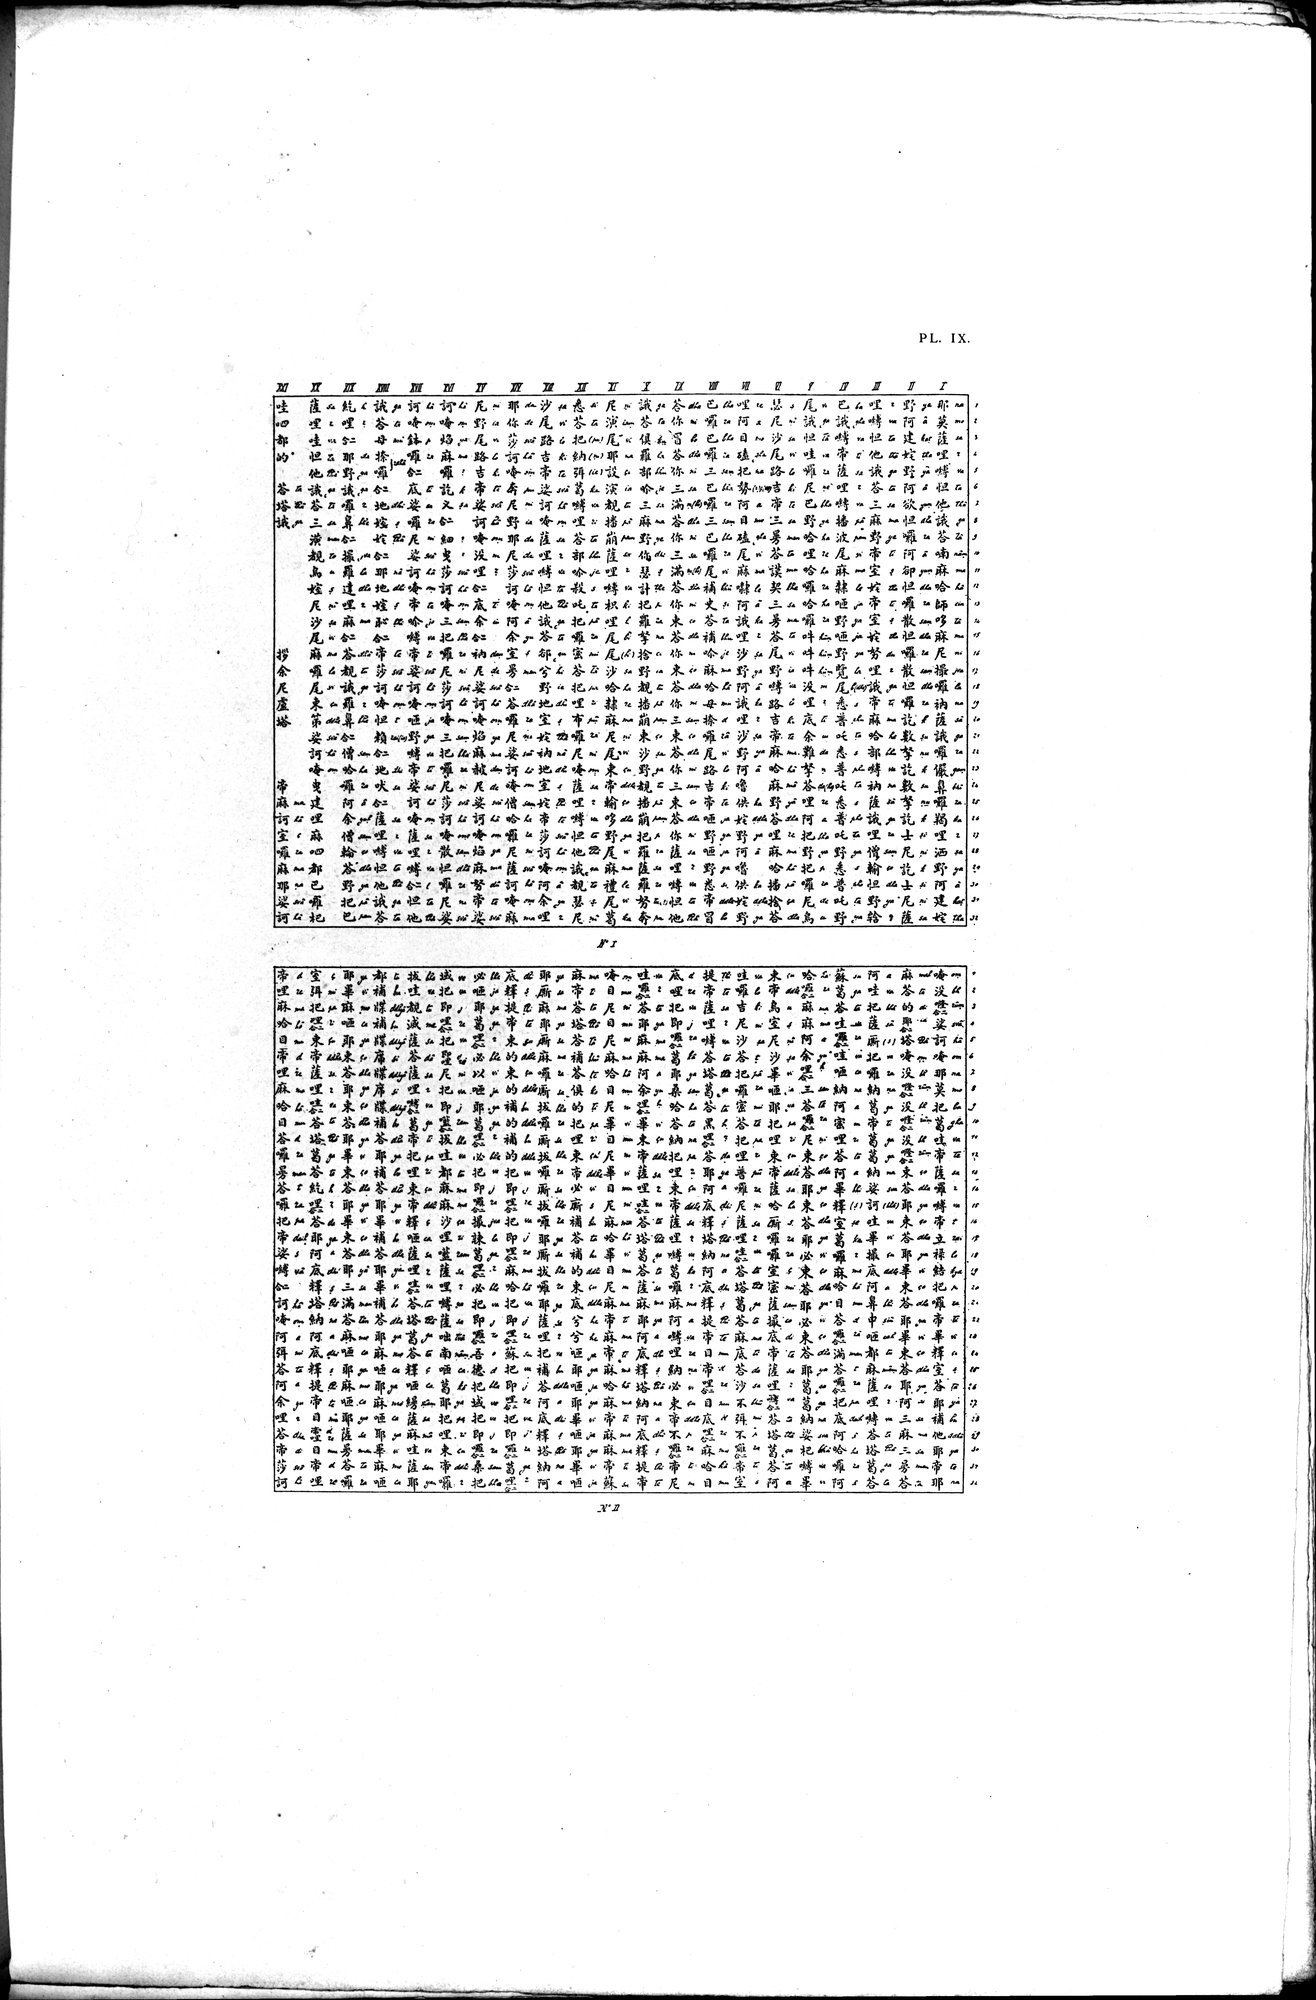 Documente de l'Époque Mongole des XIIIe et XIVe Siècle : vol.1 / Page 35 (Grayscale High Resolution Image)